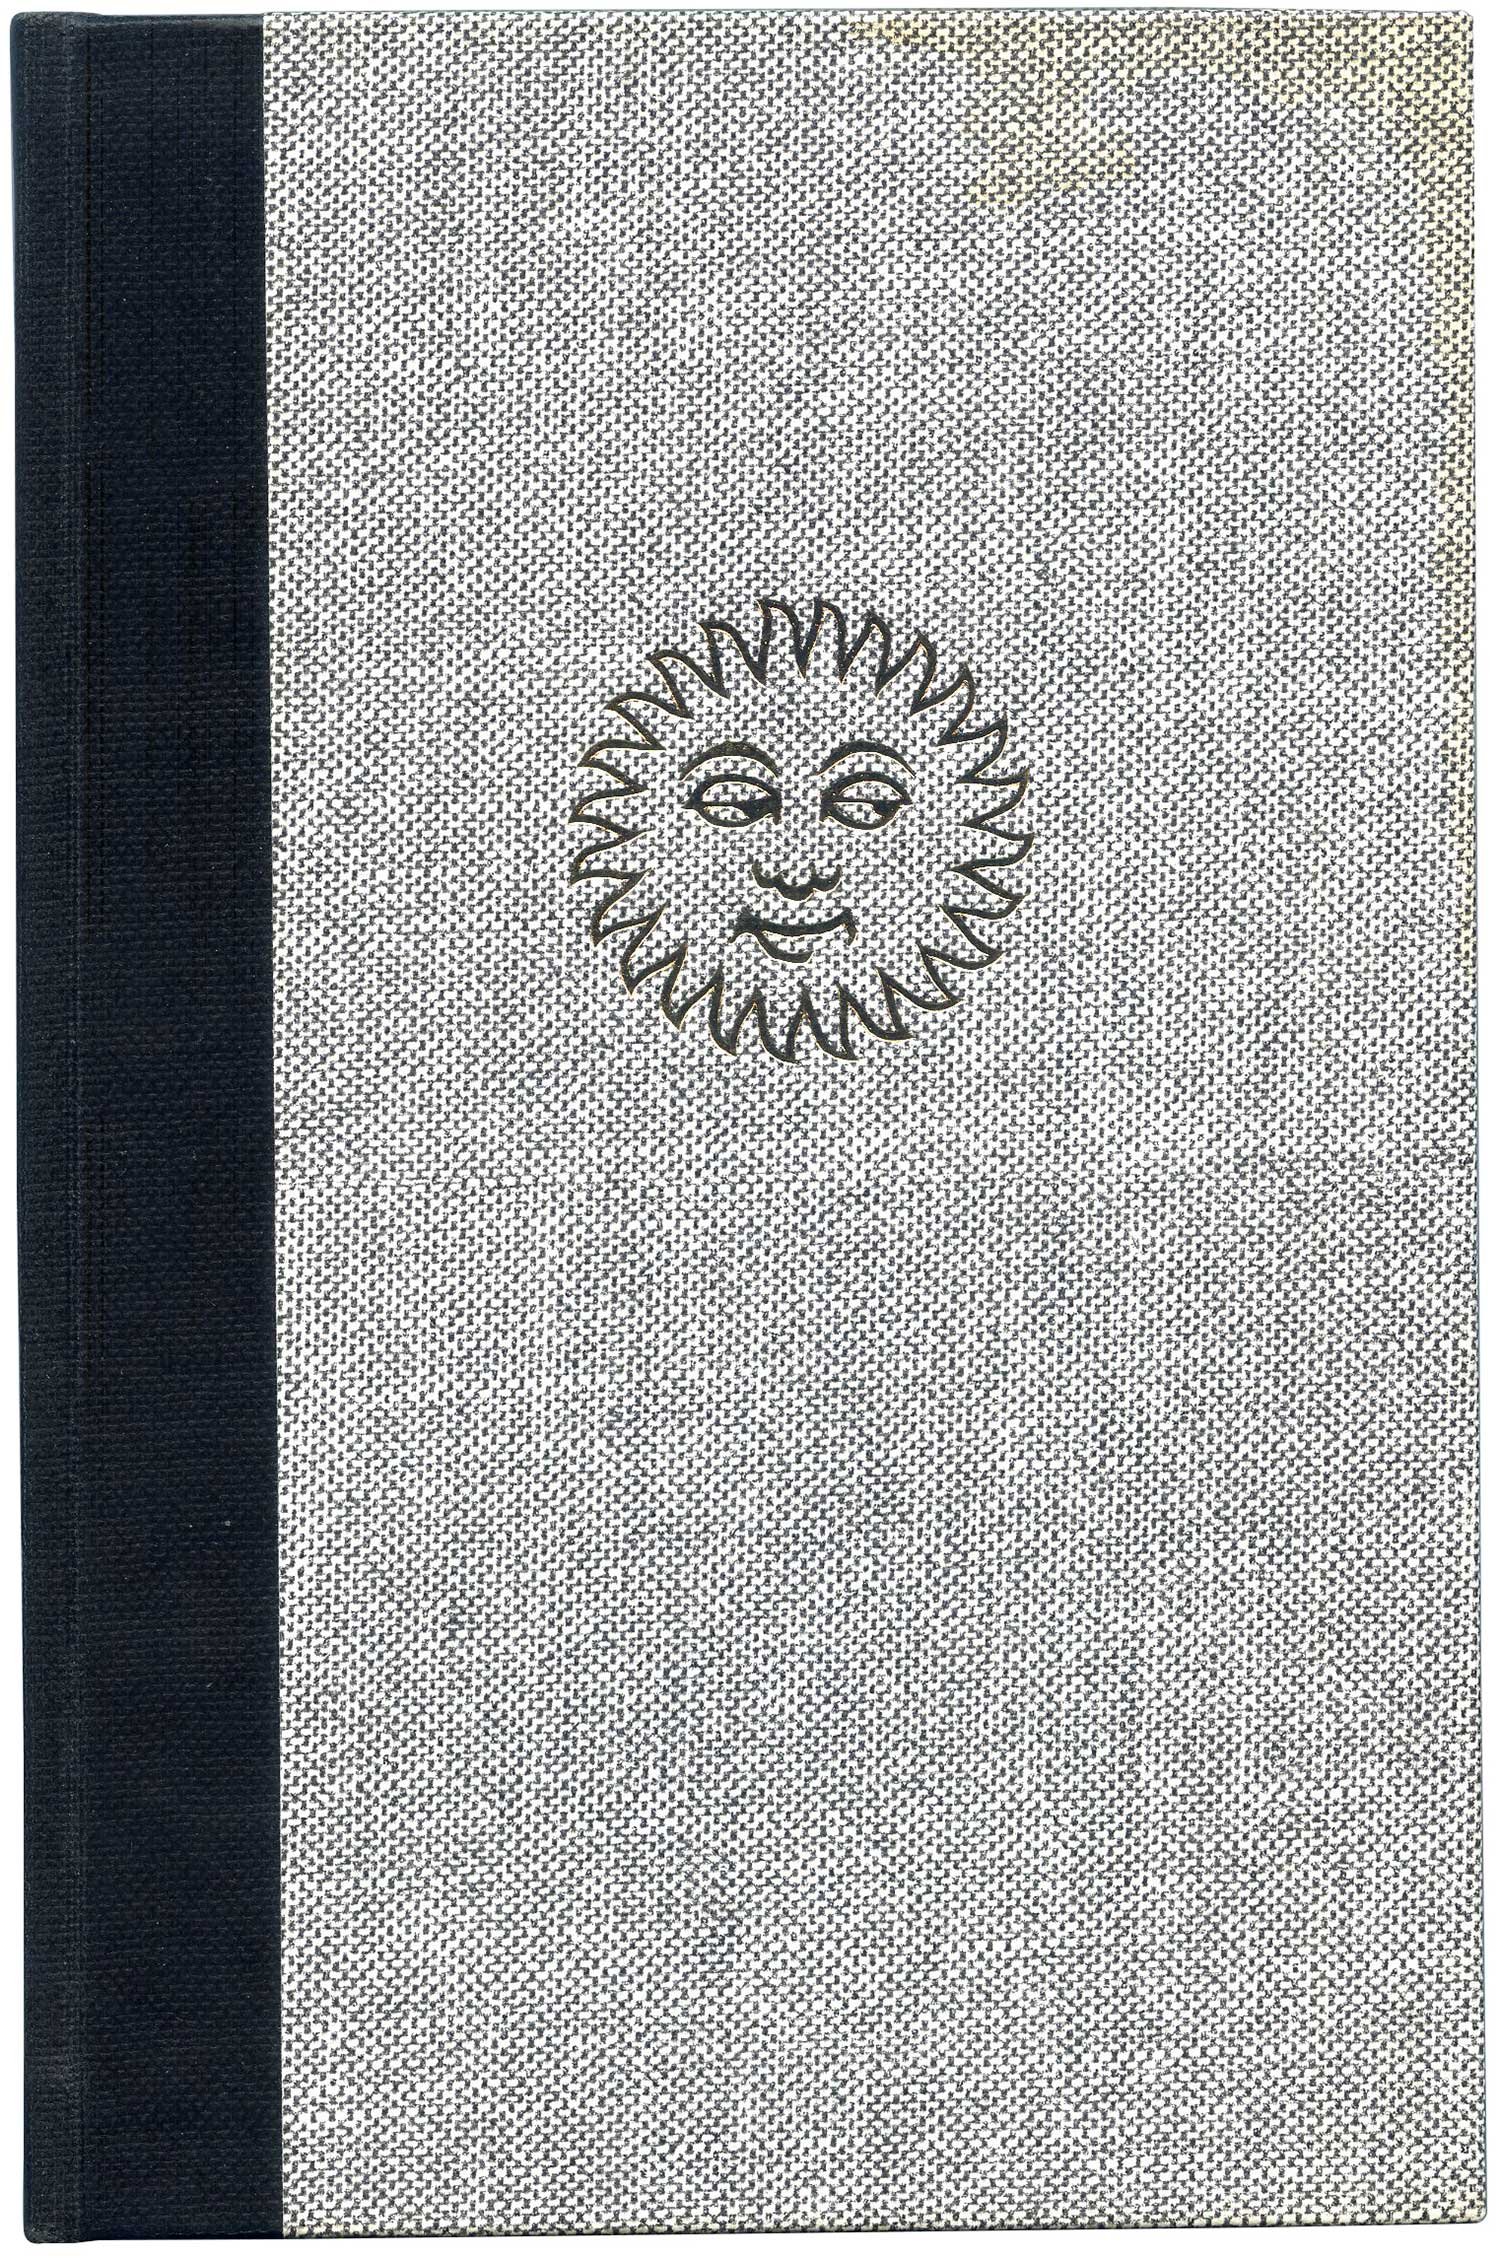   Print, a handbook. Wynkyn de Worde Society, 1966 (limited edition).  